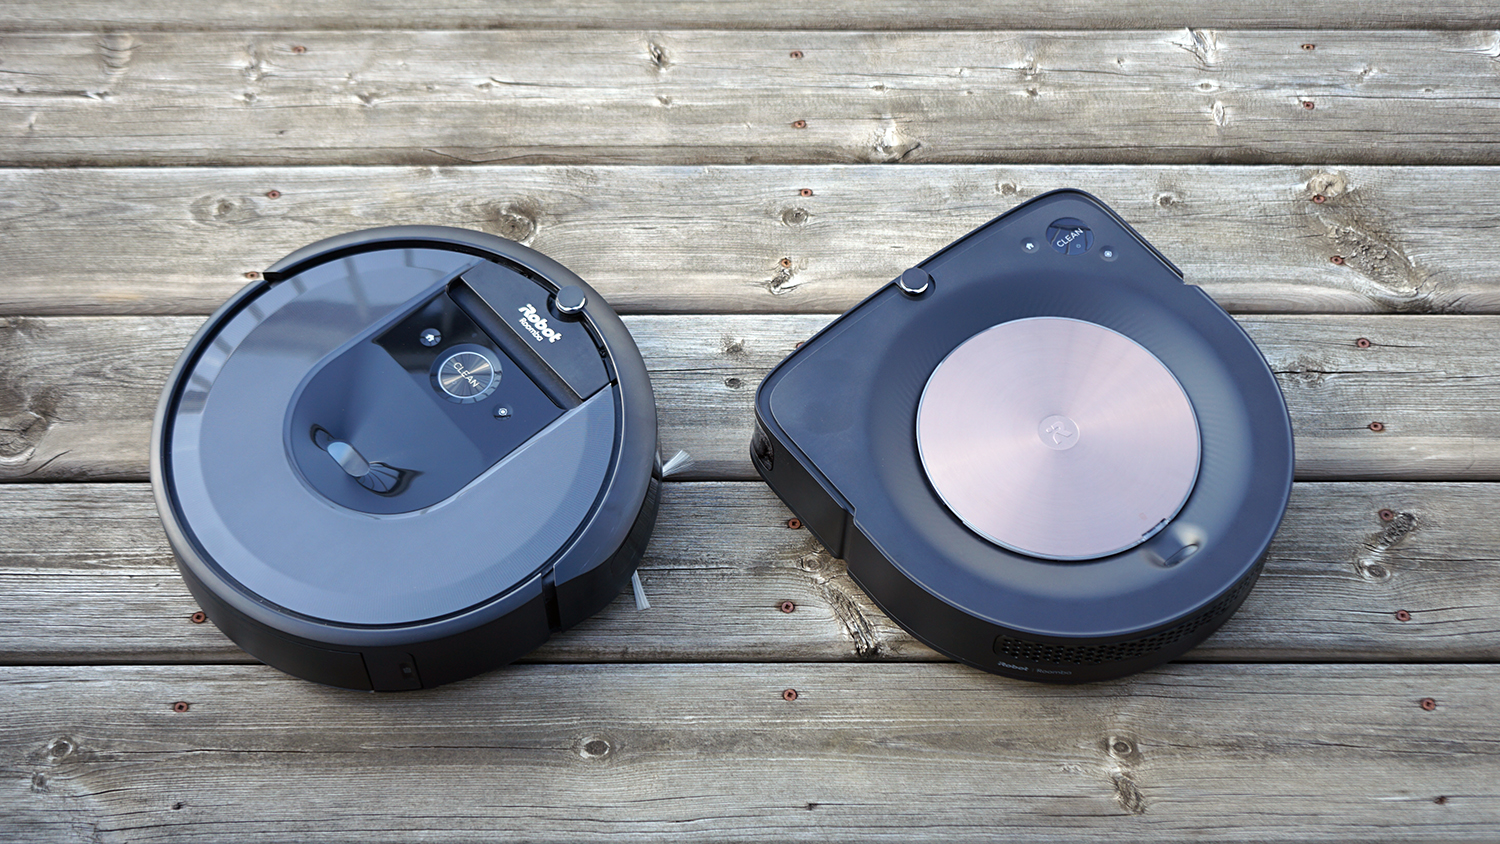 iRobot Roomba Combo i5+ Self-Emptying Robot Vacuum & Mop Woven